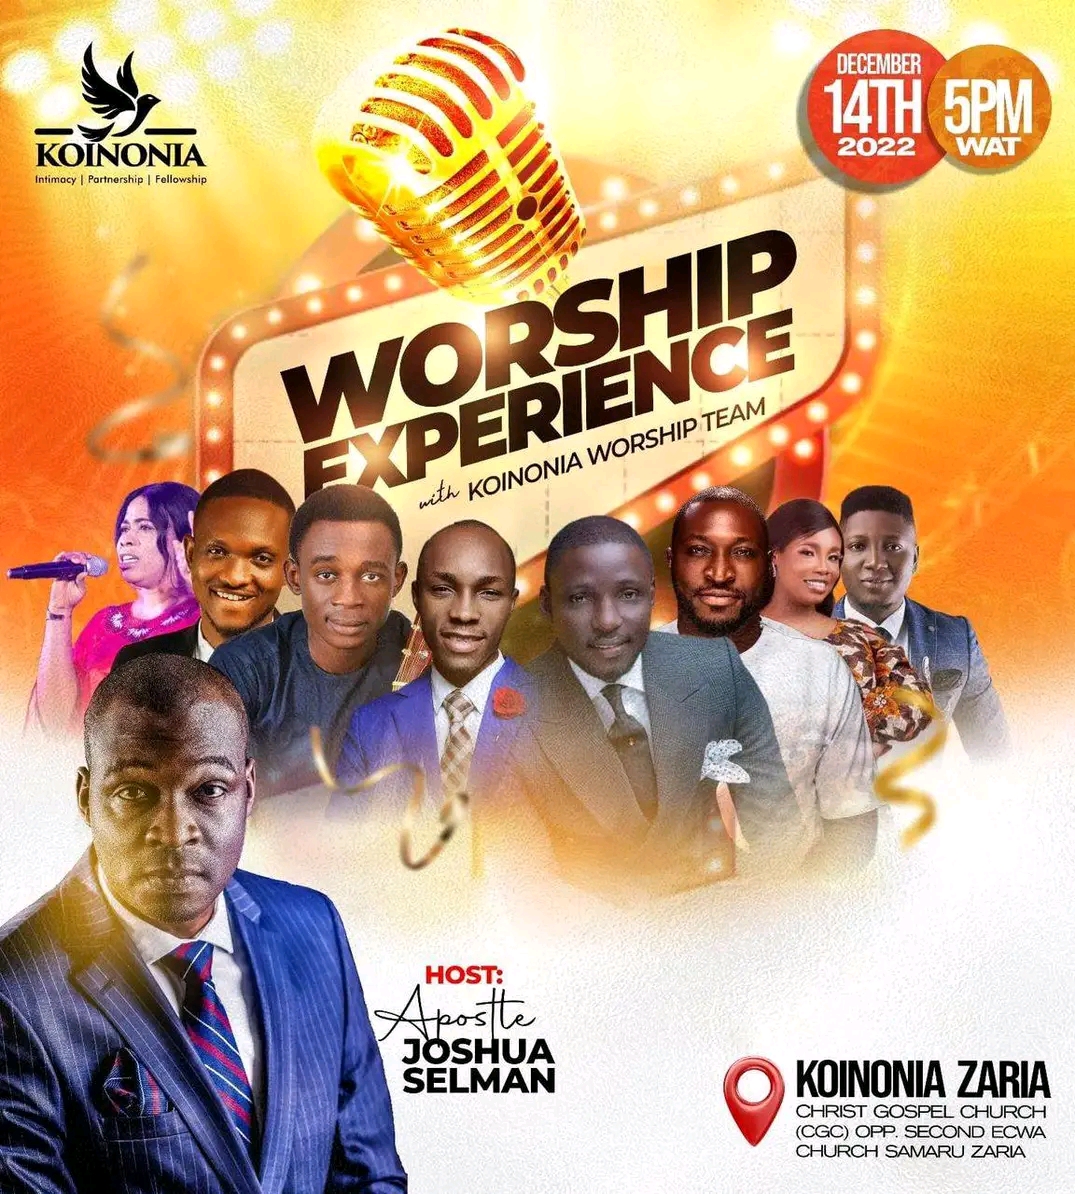 (DOWNLOAD MP3) WORSHIP EXPERIENCE – Apostle Joshua Selman with Koinonia Worship Team